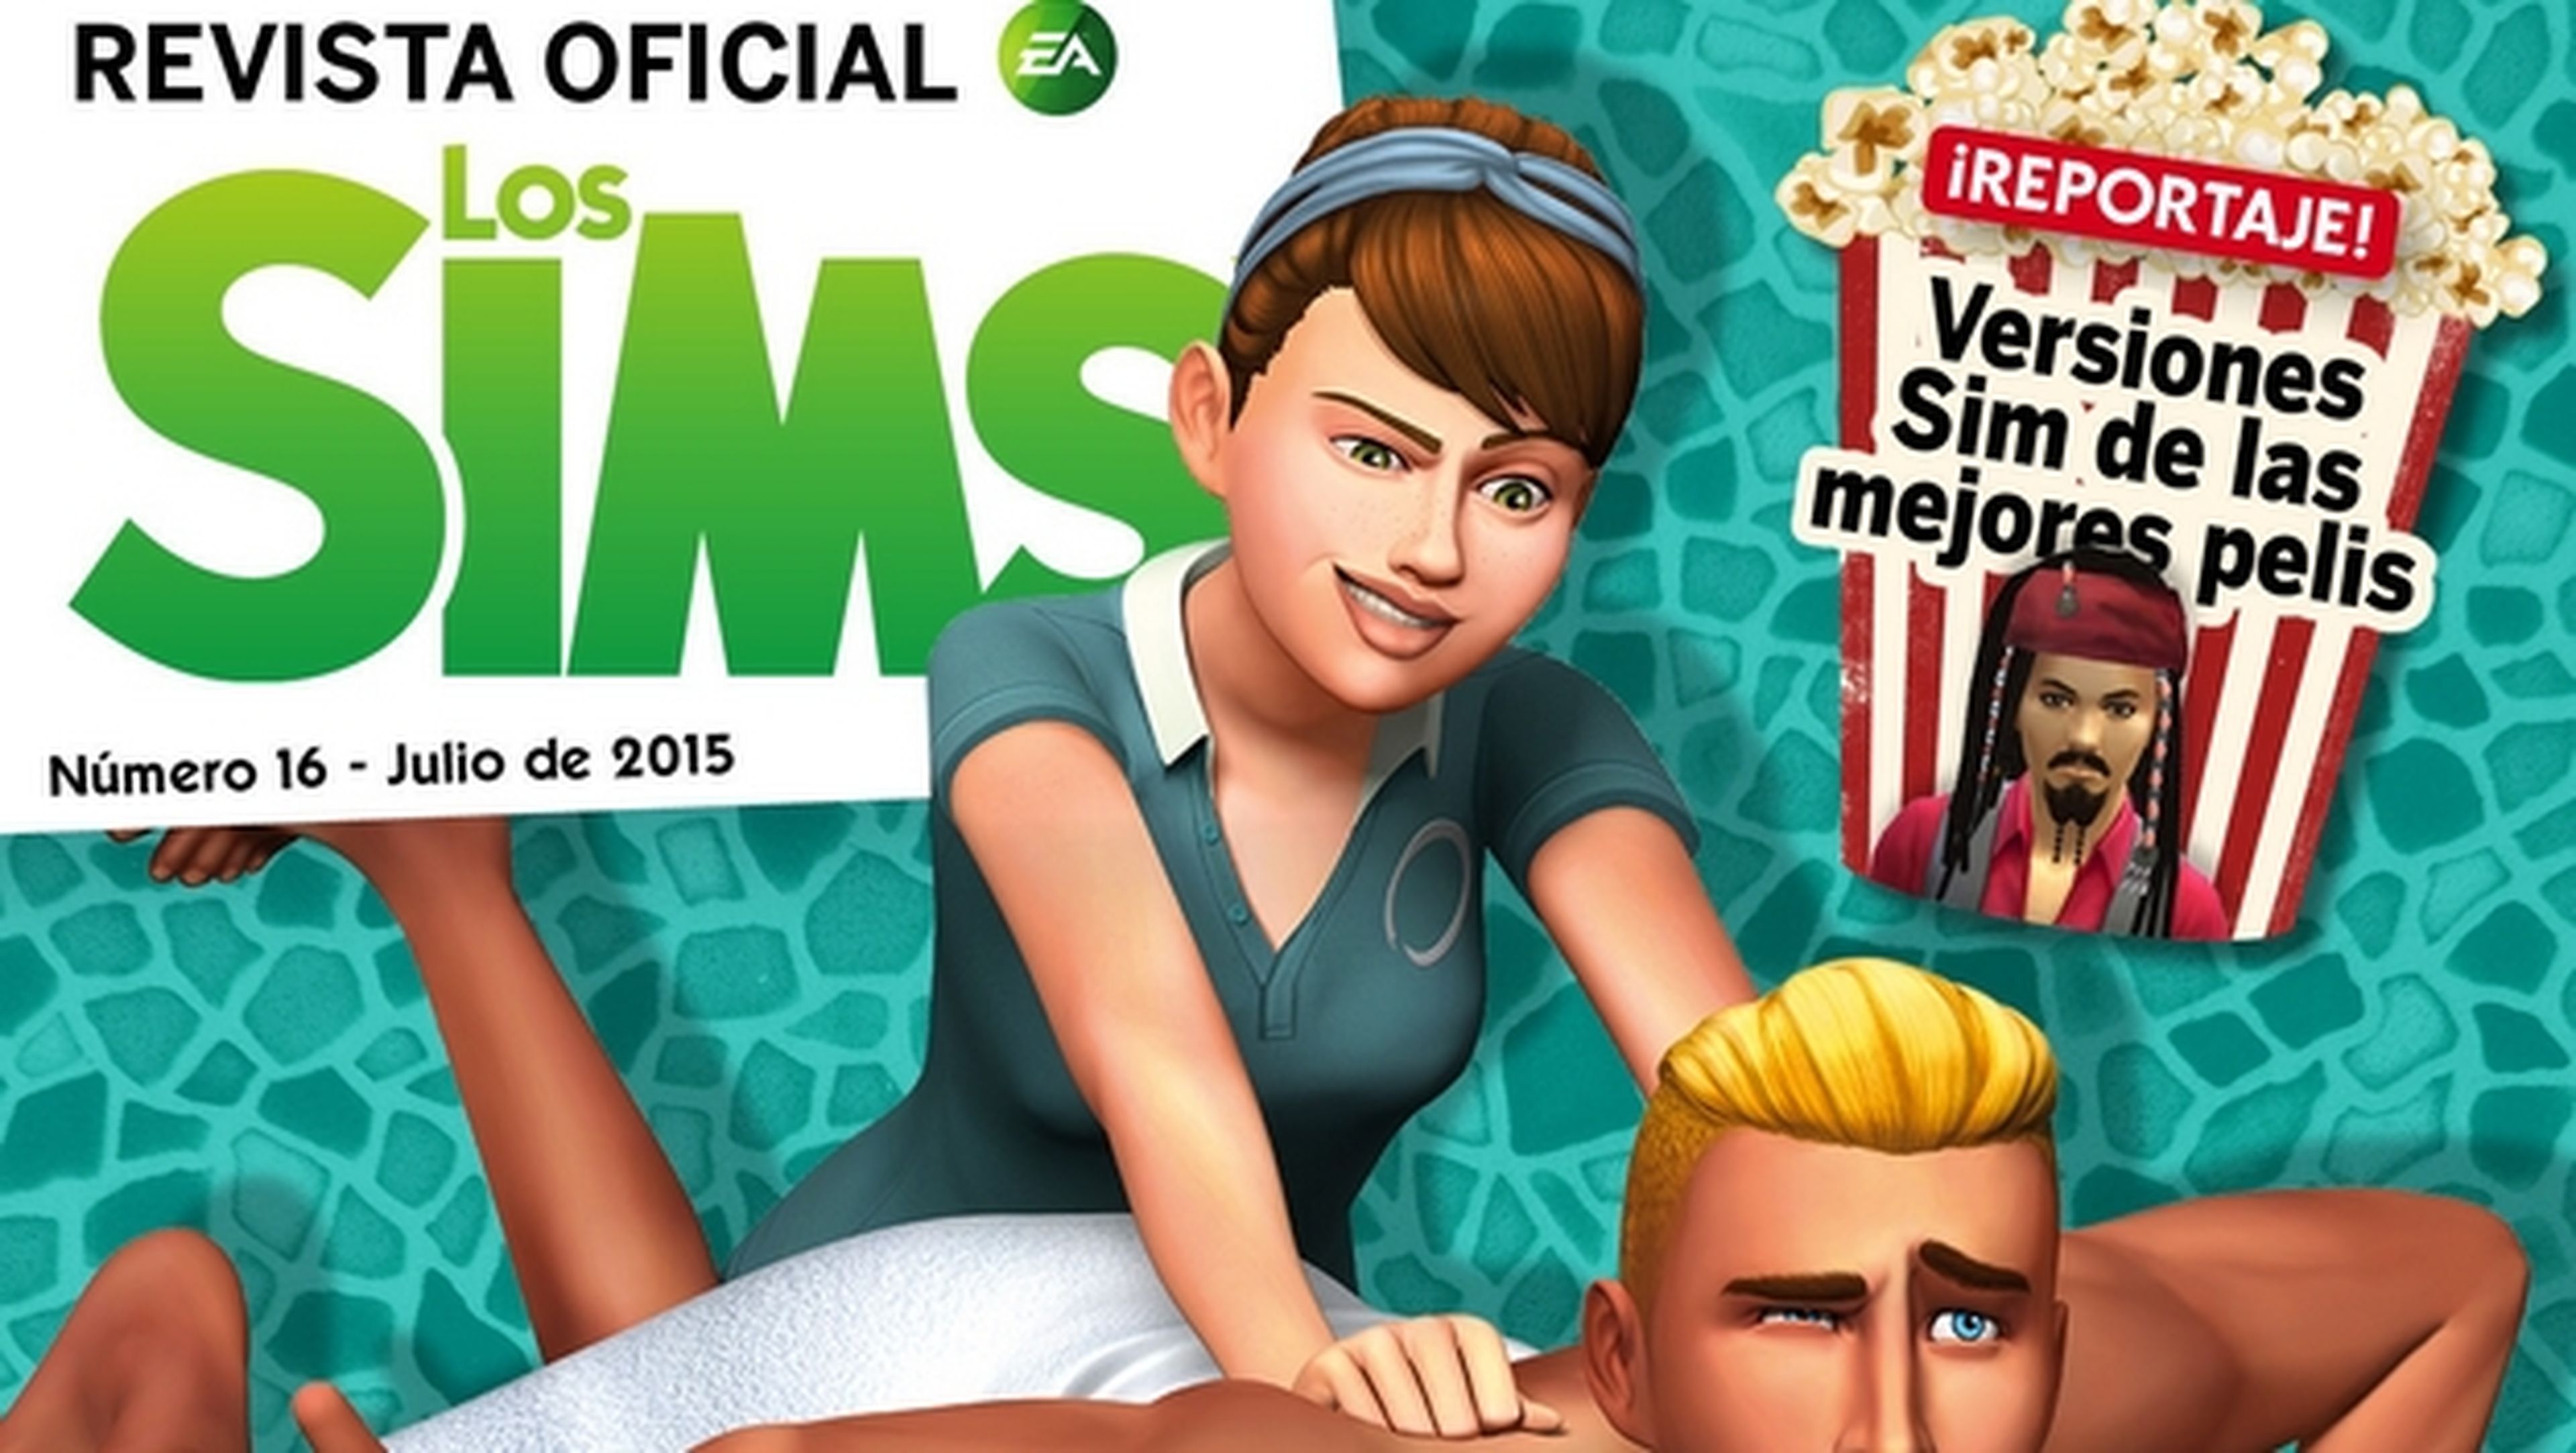 La Revista Oficial de Los Sims número 16 disponible gratis. Todo sobre Los Sims 4 Día de Spa.